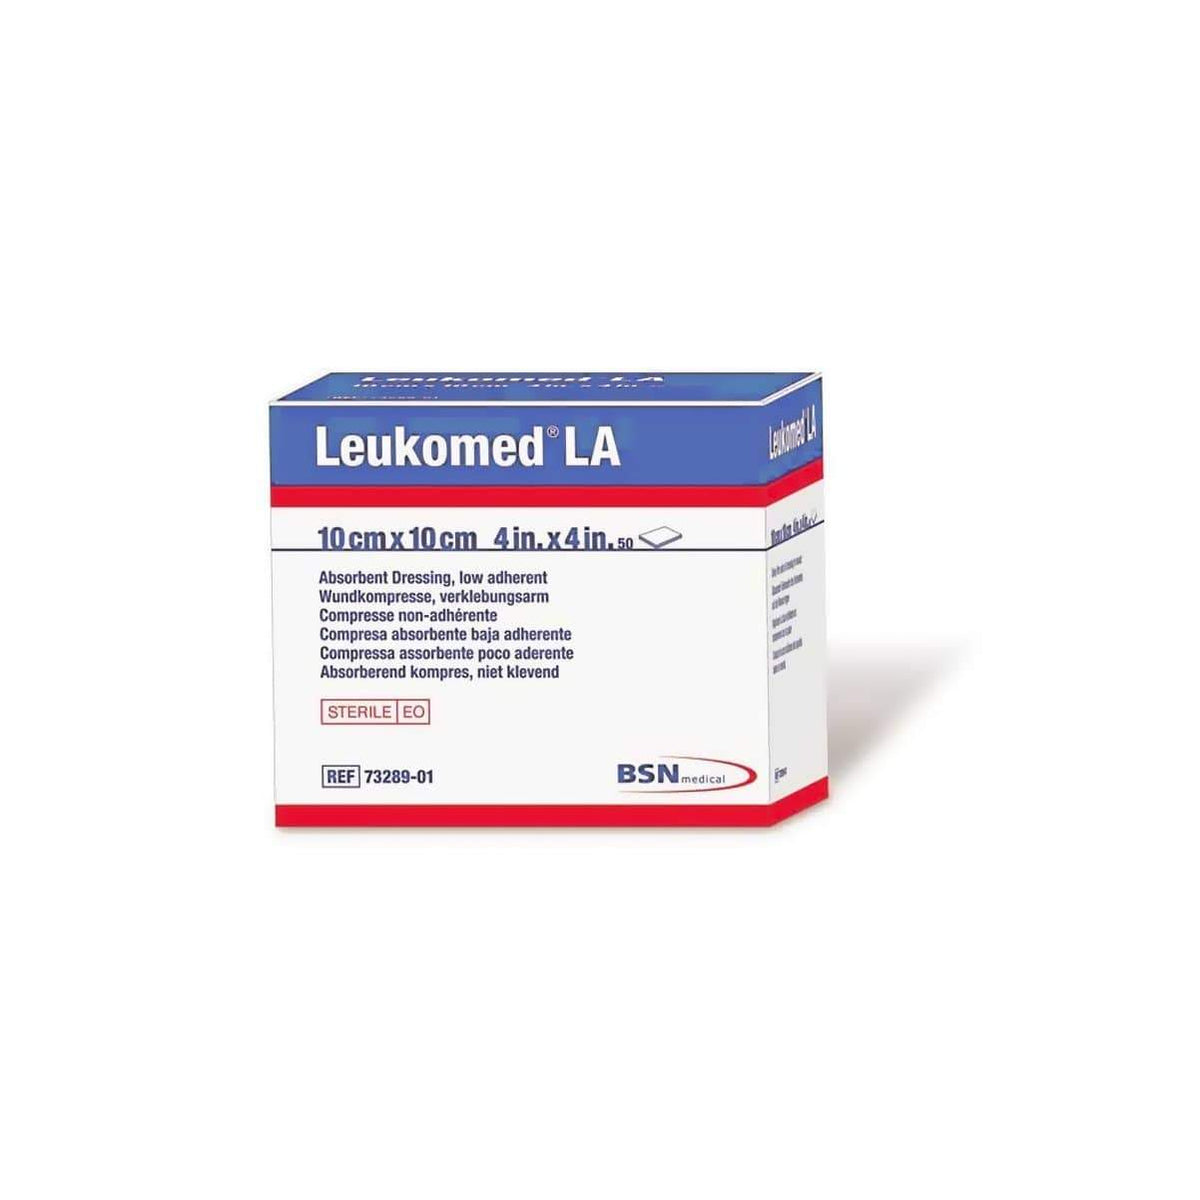 BSN Medical Leukomed LA Low Adherent